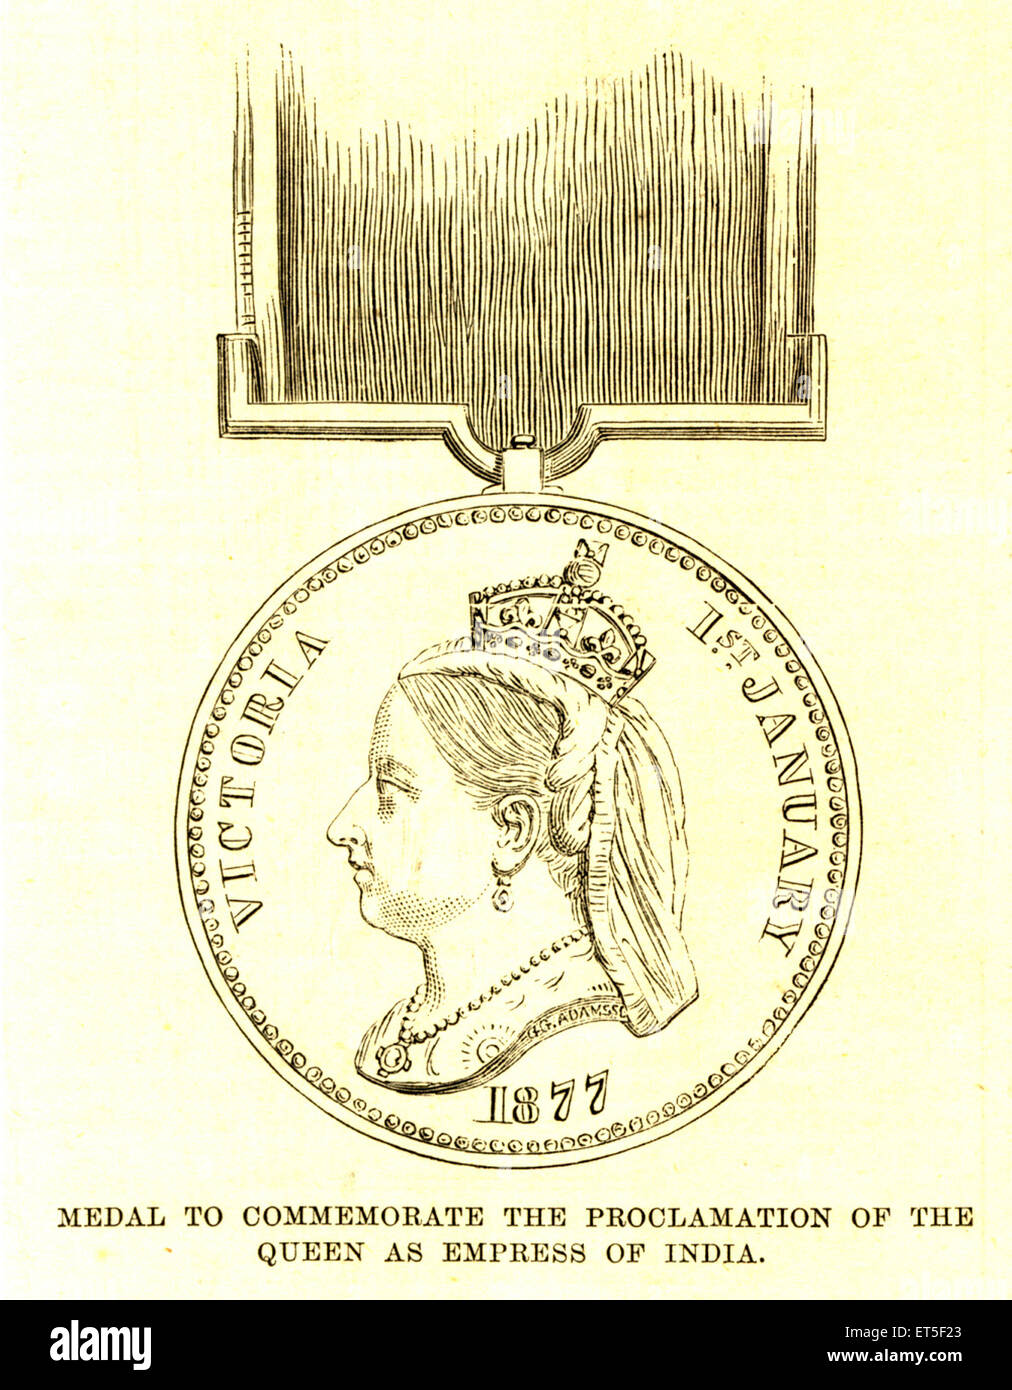 Medalla para conmemorar la proclamación de la Reina como emperatriz de la India, 1877, antiguo grabado de acero vintage 1800s Foto de stock